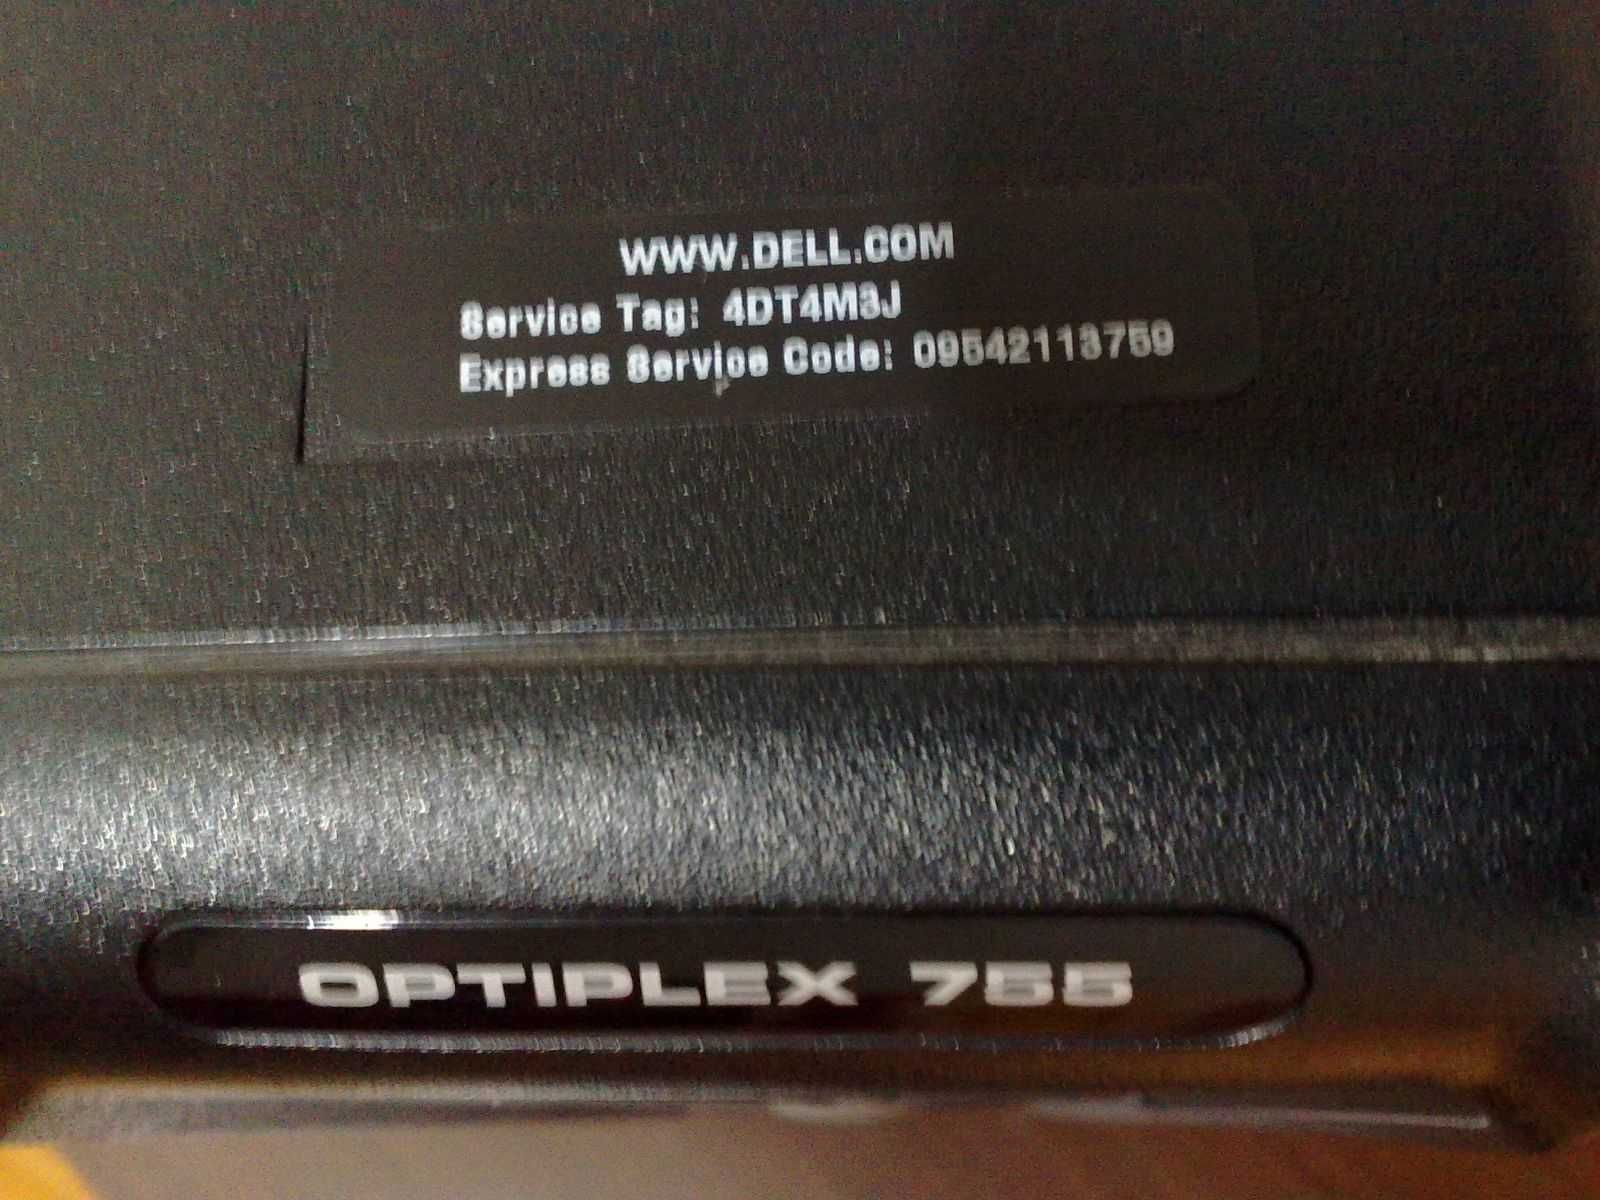 Dell Optiplex 775, C2D E6300 - (Windows 7 Home Premium)